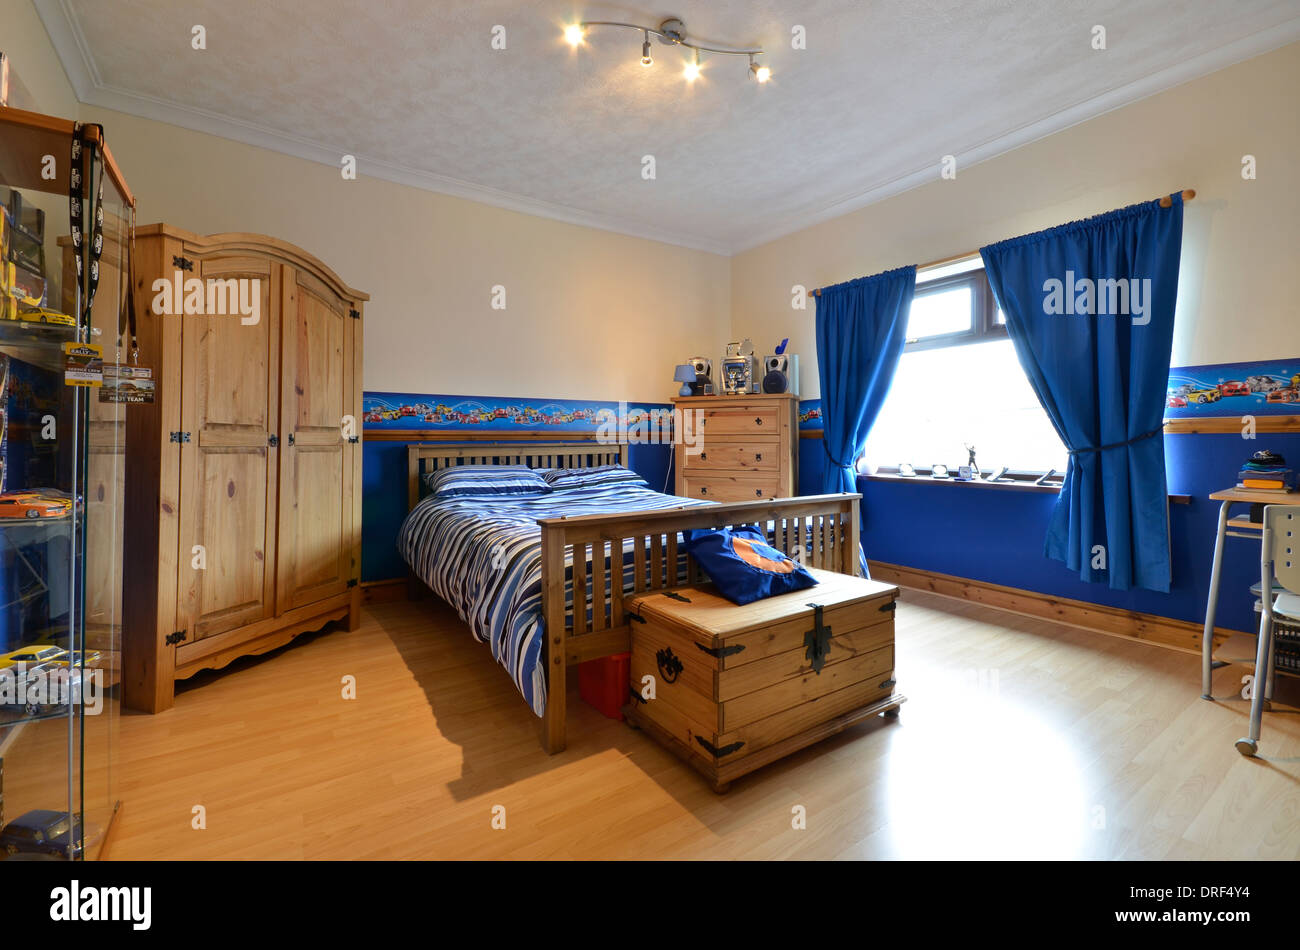 Chambre adolescent en bleu avec armoire en pin Banque D'Images